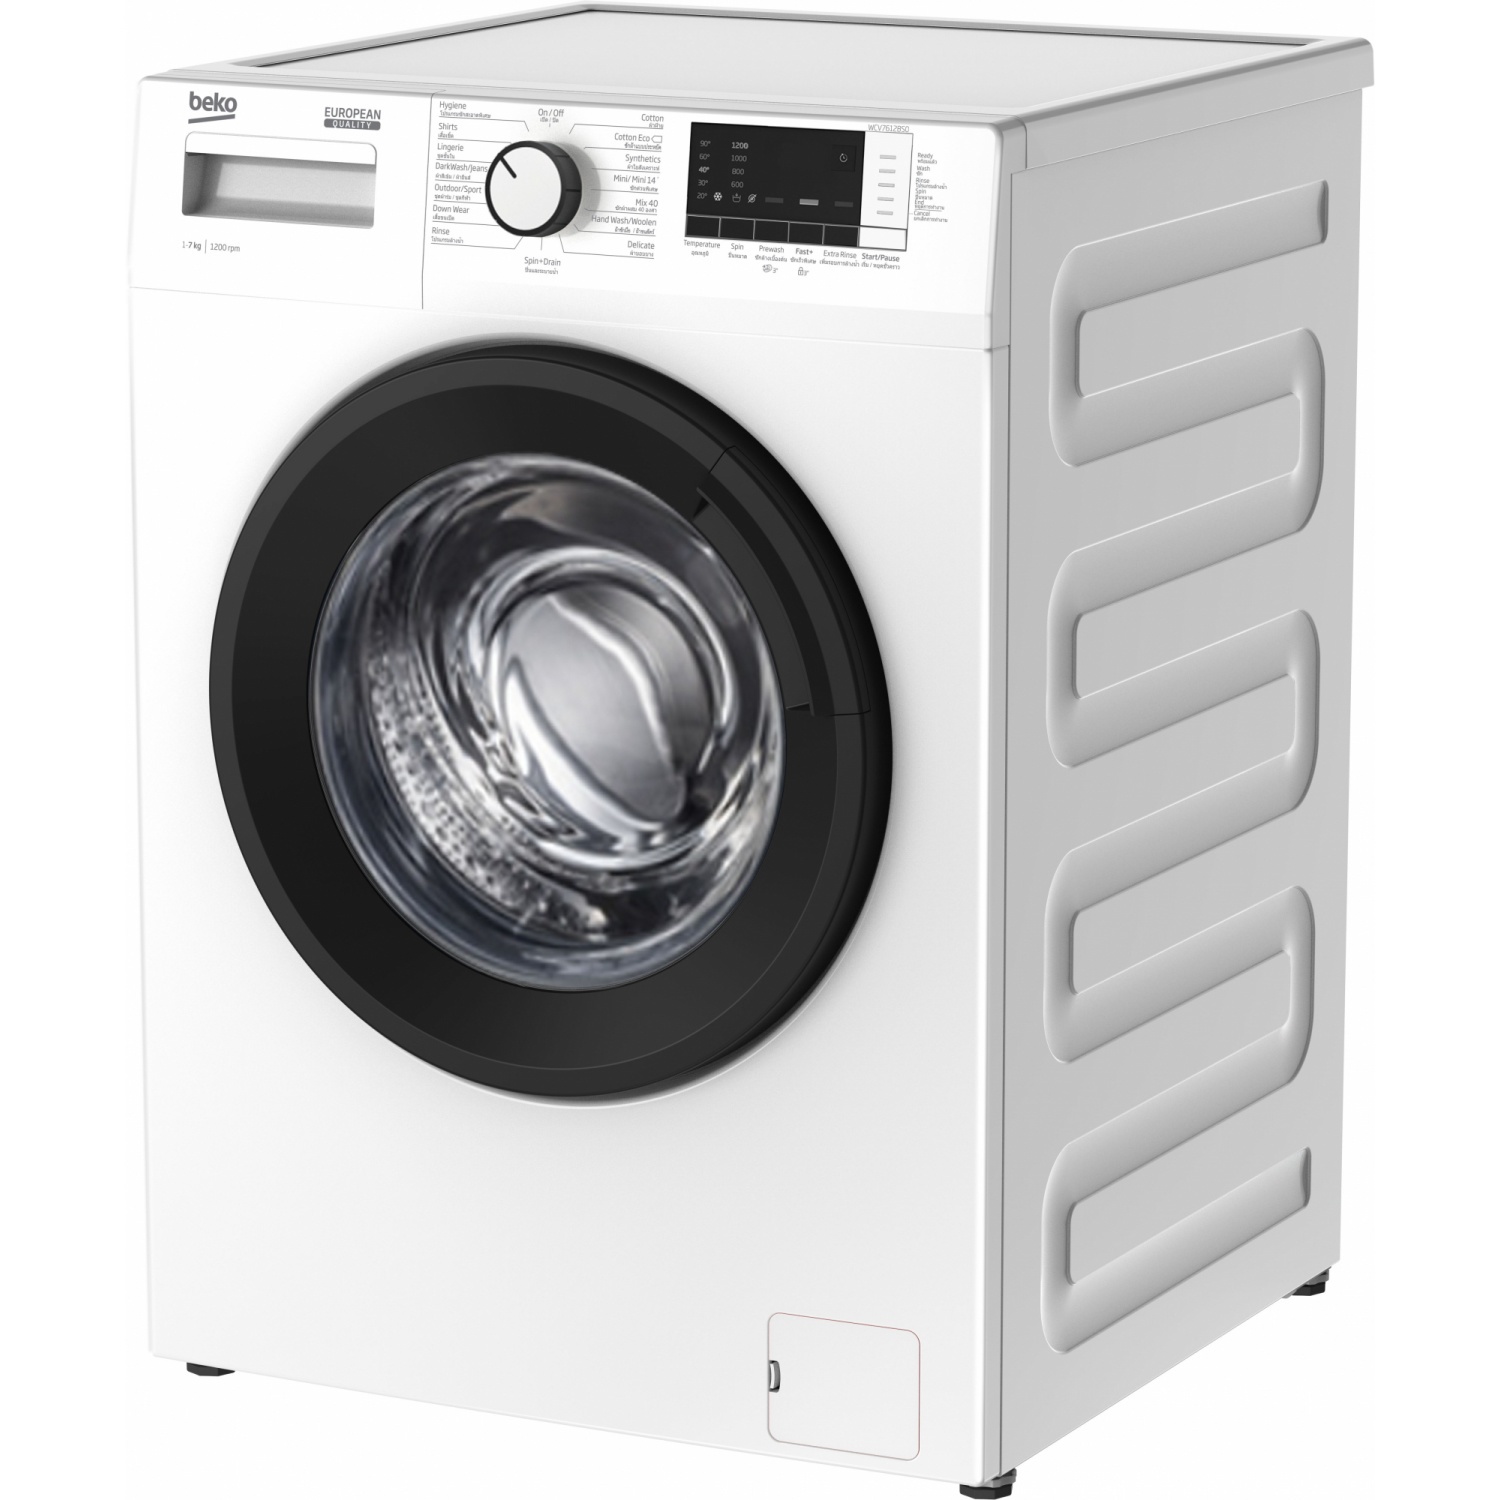 Beko เครื่องซักผ้าฝาหน้า ขนาด 7 กิโลกรัม รุ่น WCV7612BS0 สีขาว